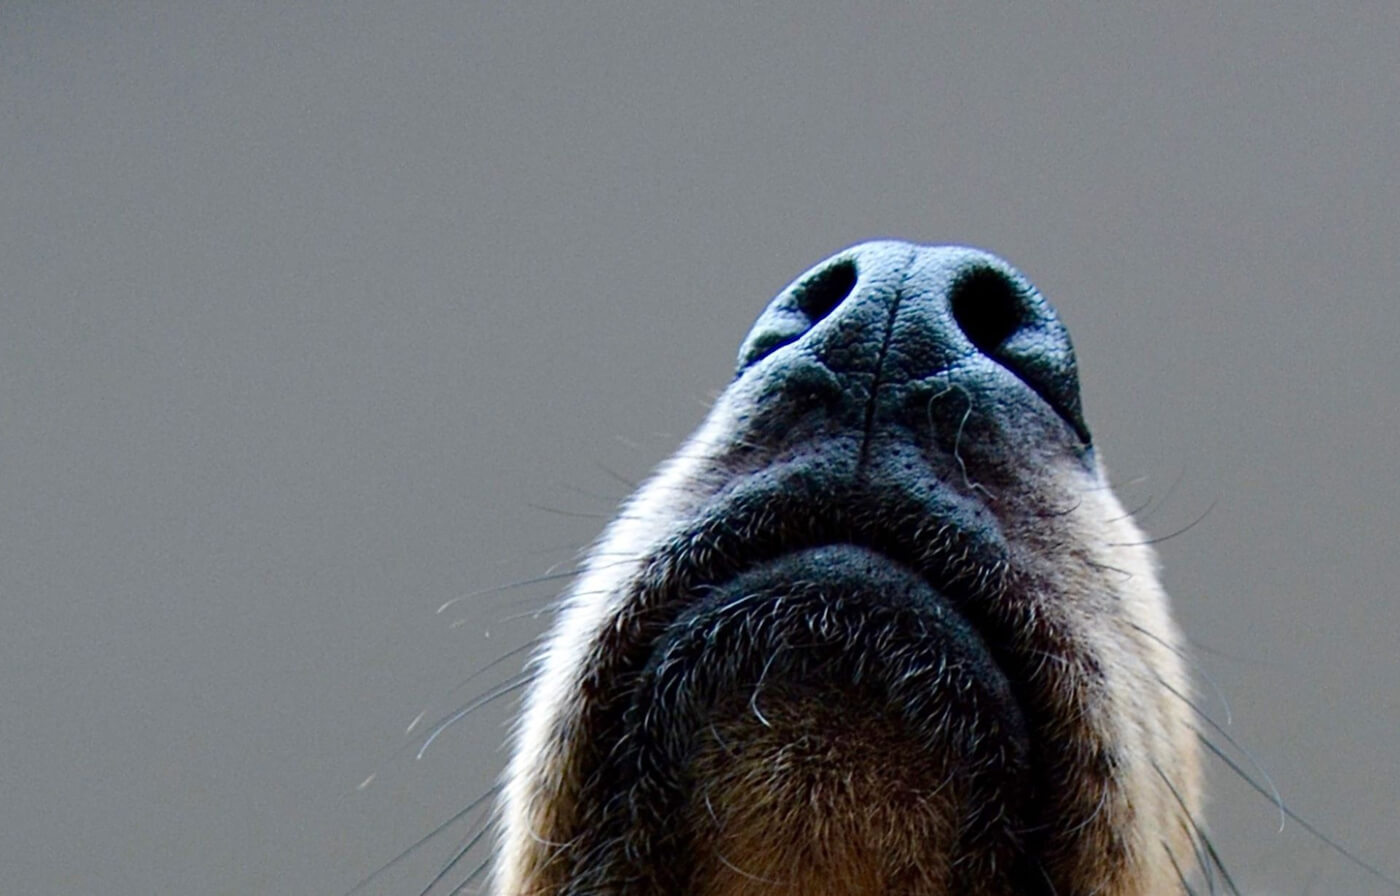 Dog sniffing horizontal